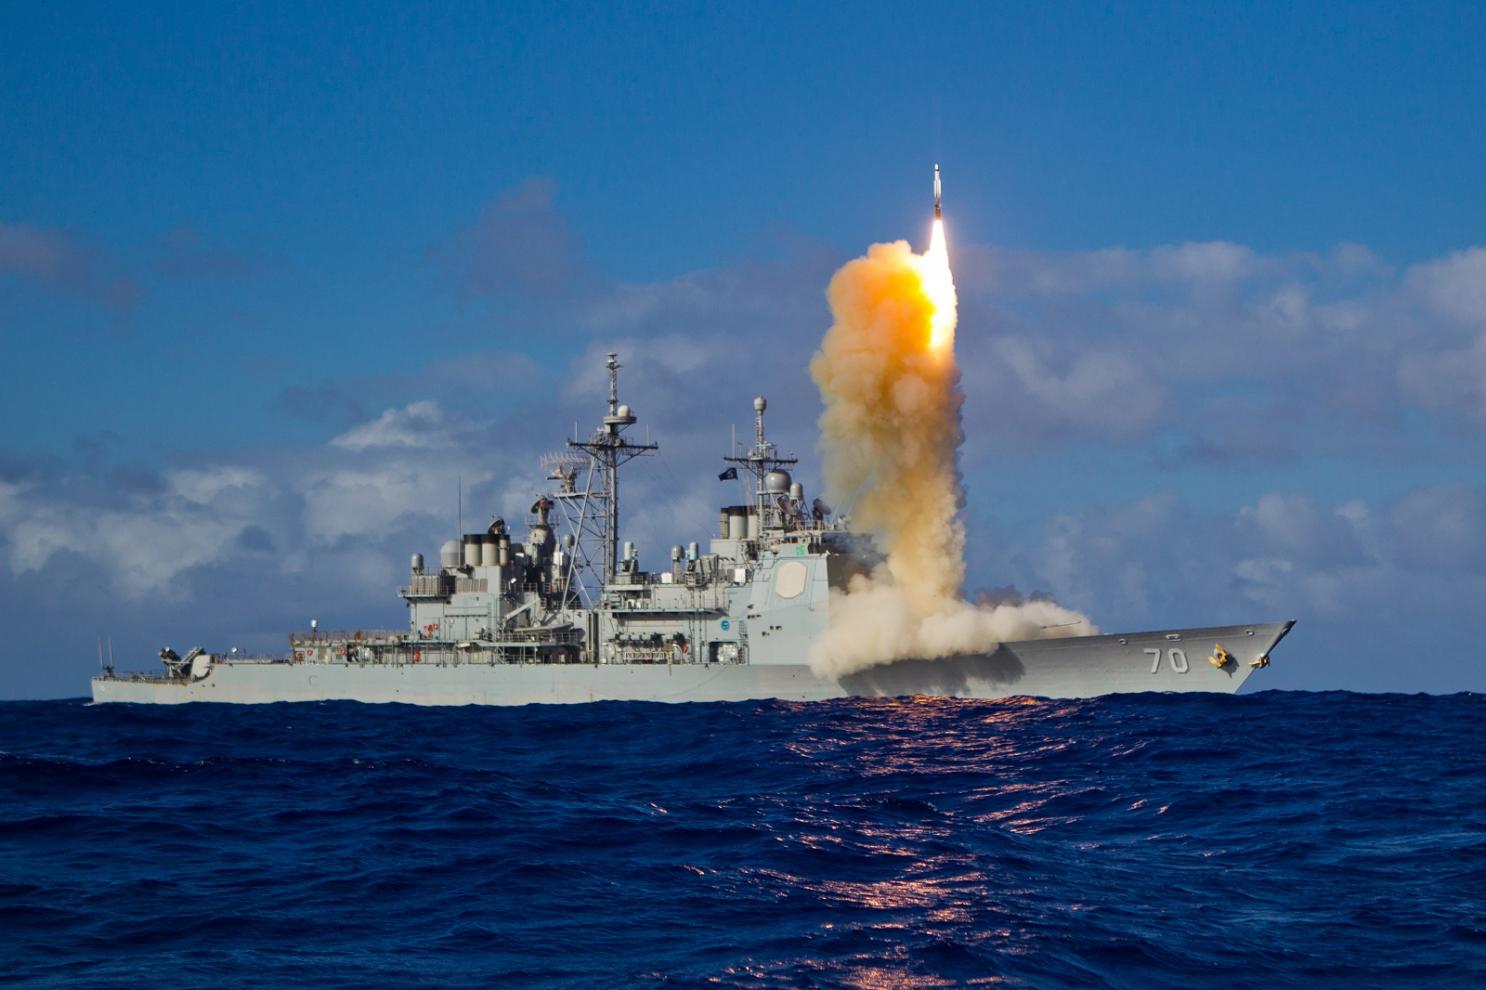 Nếu TQ giáng 600 tên lửa hủy diệt, tàu sân bay Mỹ chống đỡ thế nào? - 1